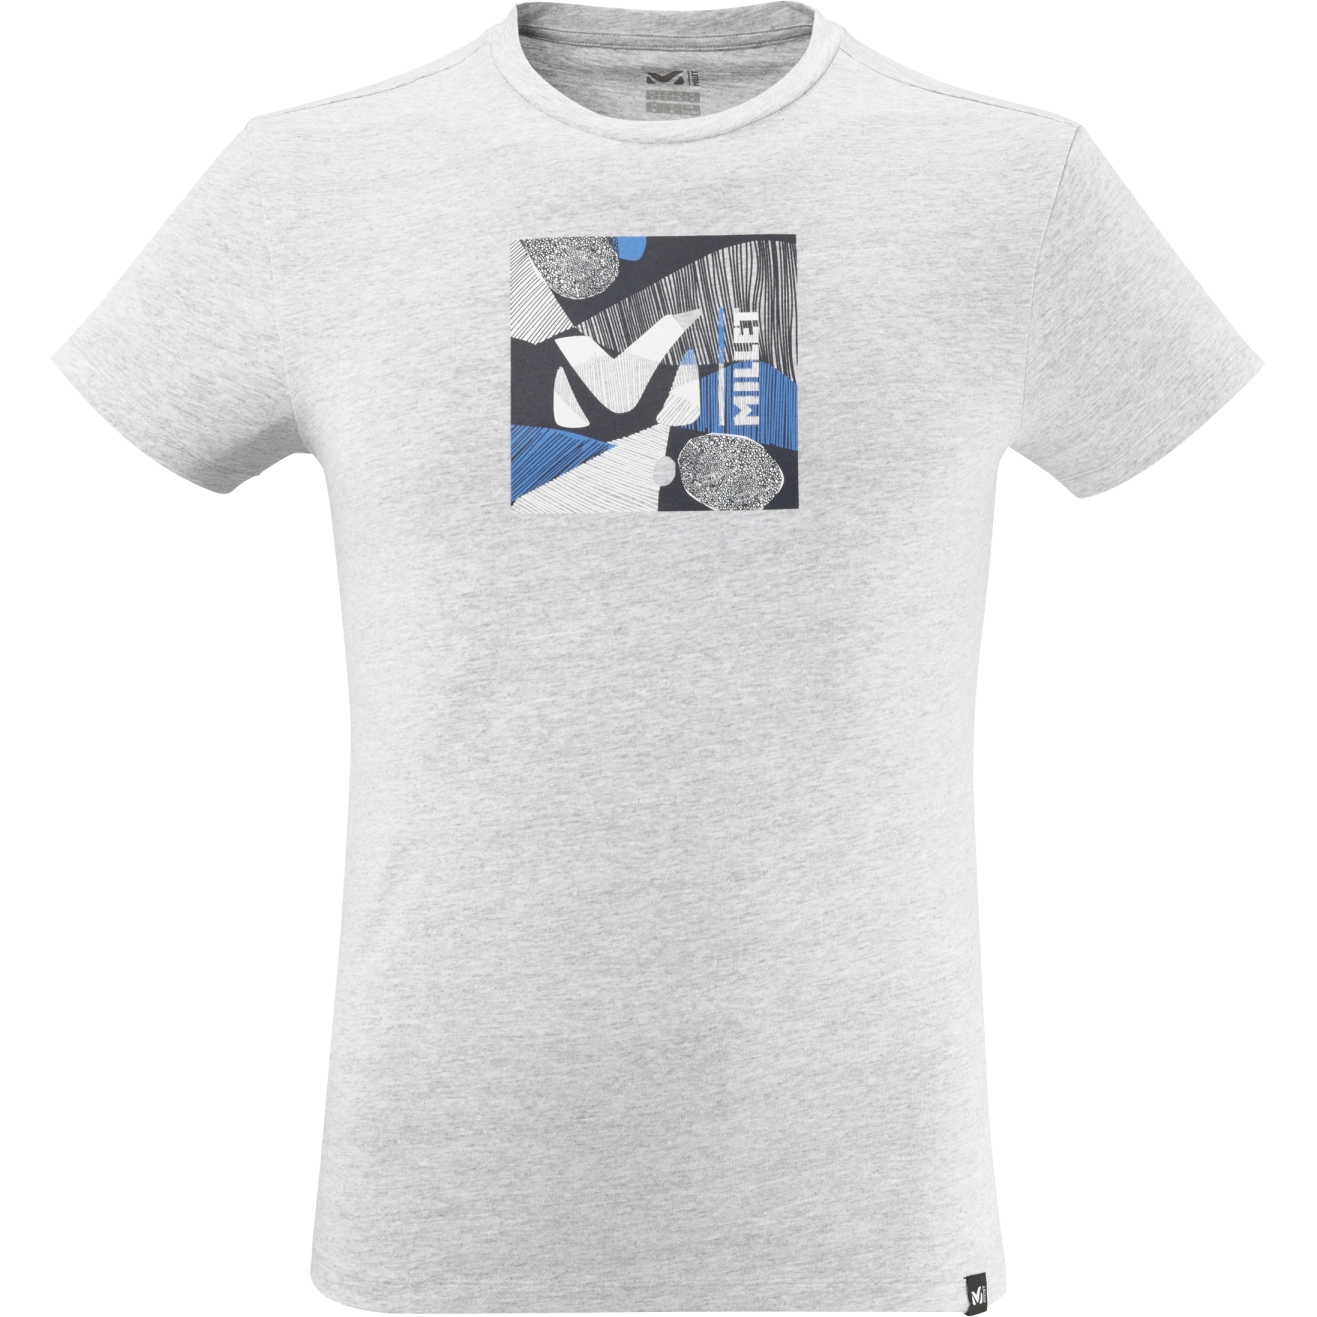 Produktbild von Millet Siurana T-Shirt Herren - Heather Grey/Heather Grey